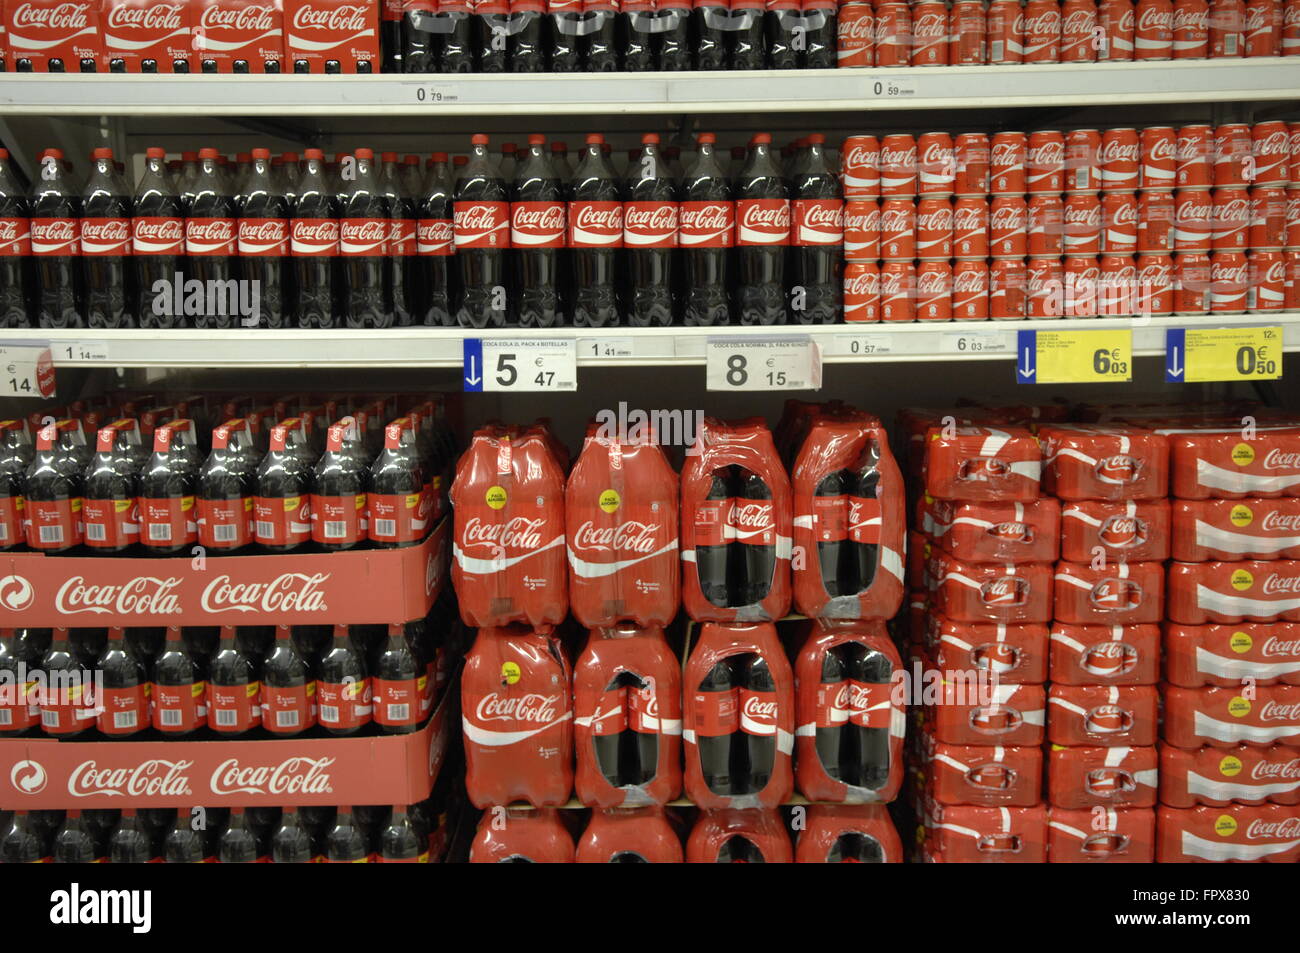 Close up of Coca Cola bouteilles et boîtes affichées dans un supermarché Carrefour Malaga Espagne. Banque D'Images